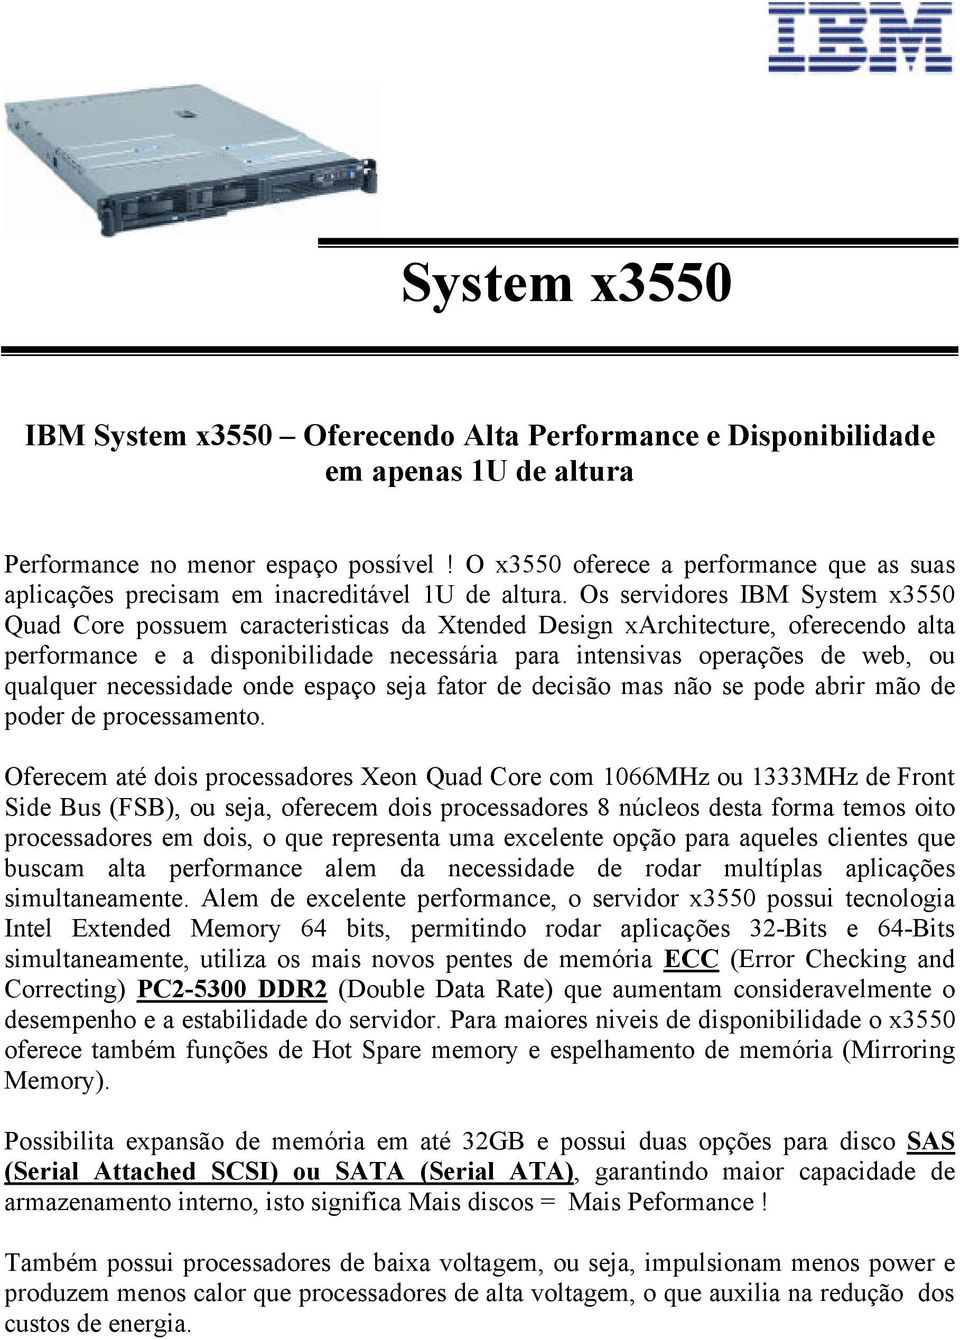 Os servidores IBM System x3550 Quad Core possuem caracteristicas da Xtended Design xarchitecture, oferecendo alta performance e a disponibilidade necessária para intensivas operações de web, ou